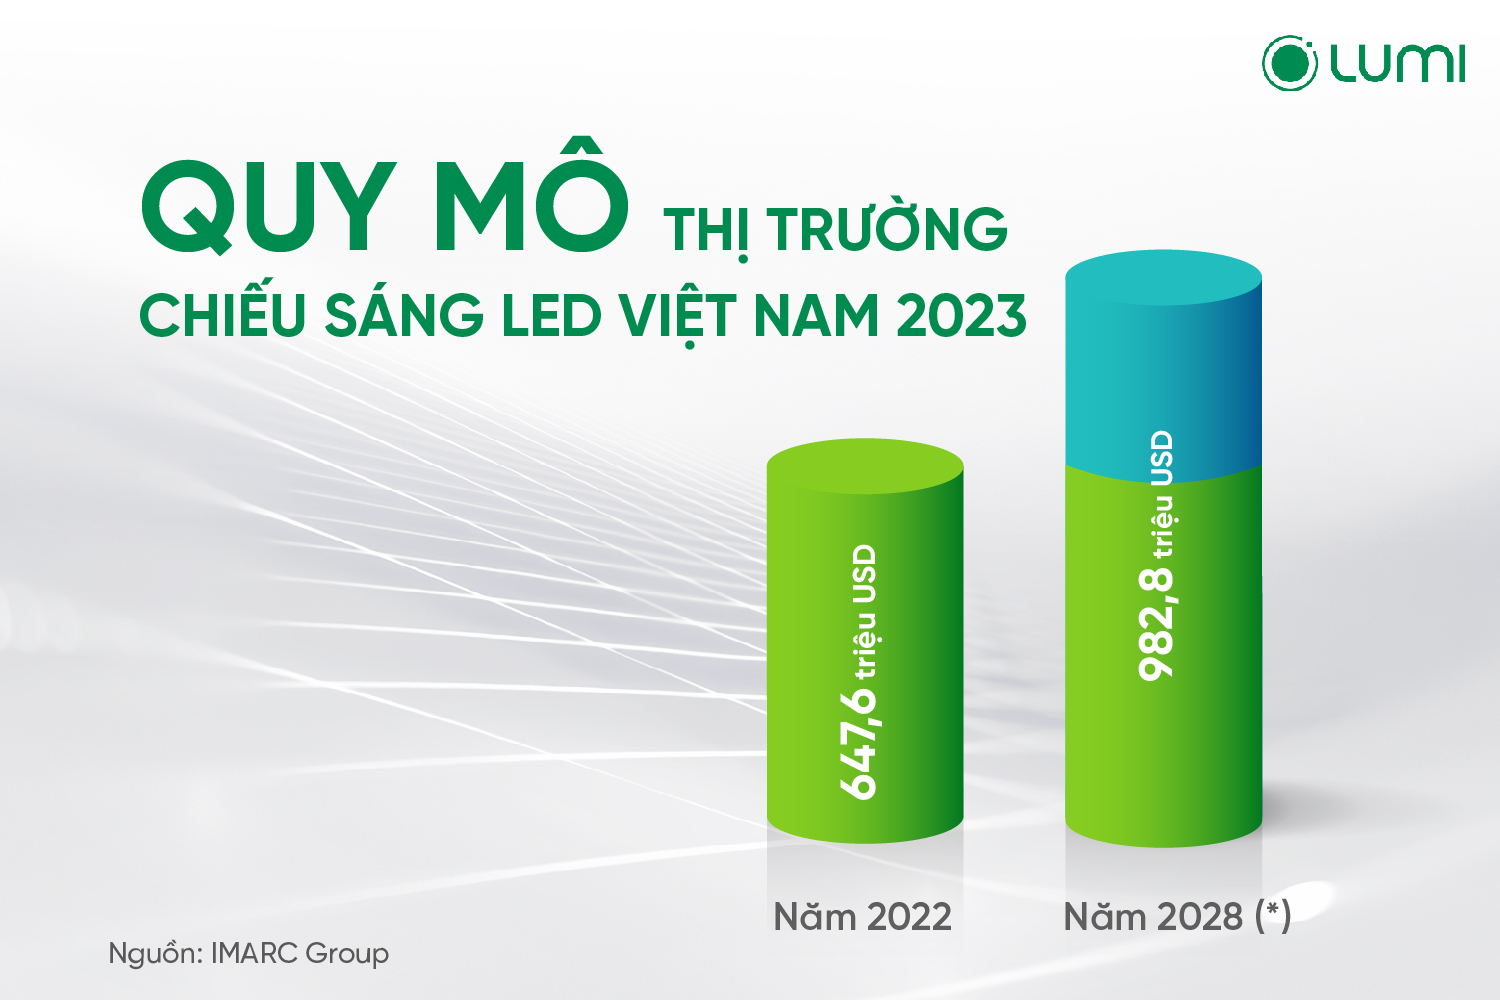 Quy mô thị trường chiếu sáng Việt Nam giai đoạn 2022-2028